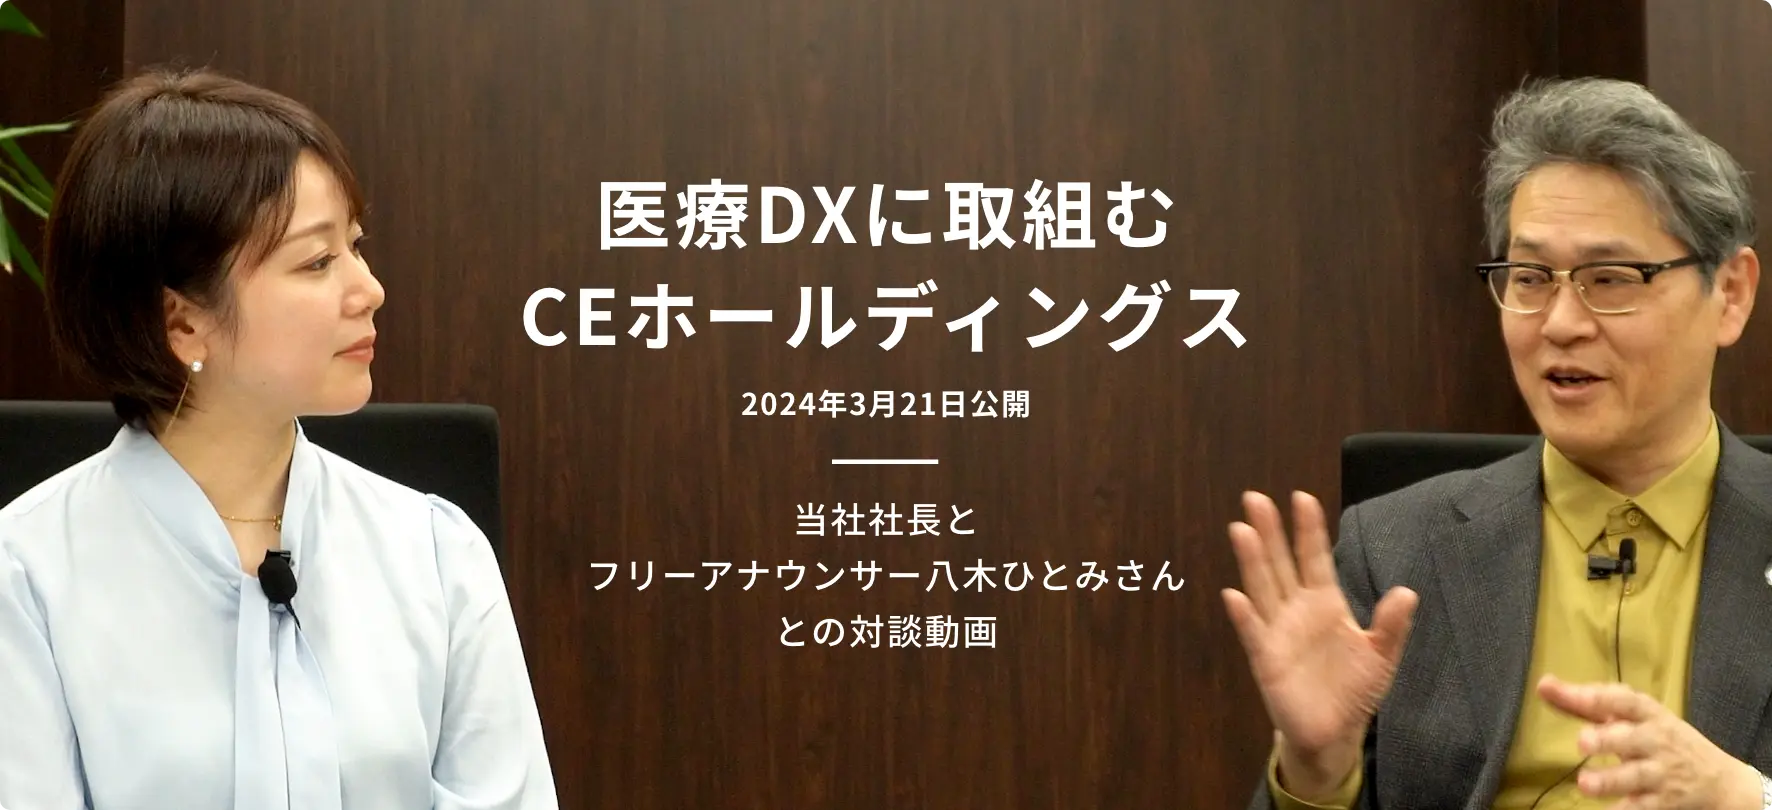 医療DXに取り組むCEホールディングス 当社社長とフリーアナウンサー八木ひとみさんとの対談動画